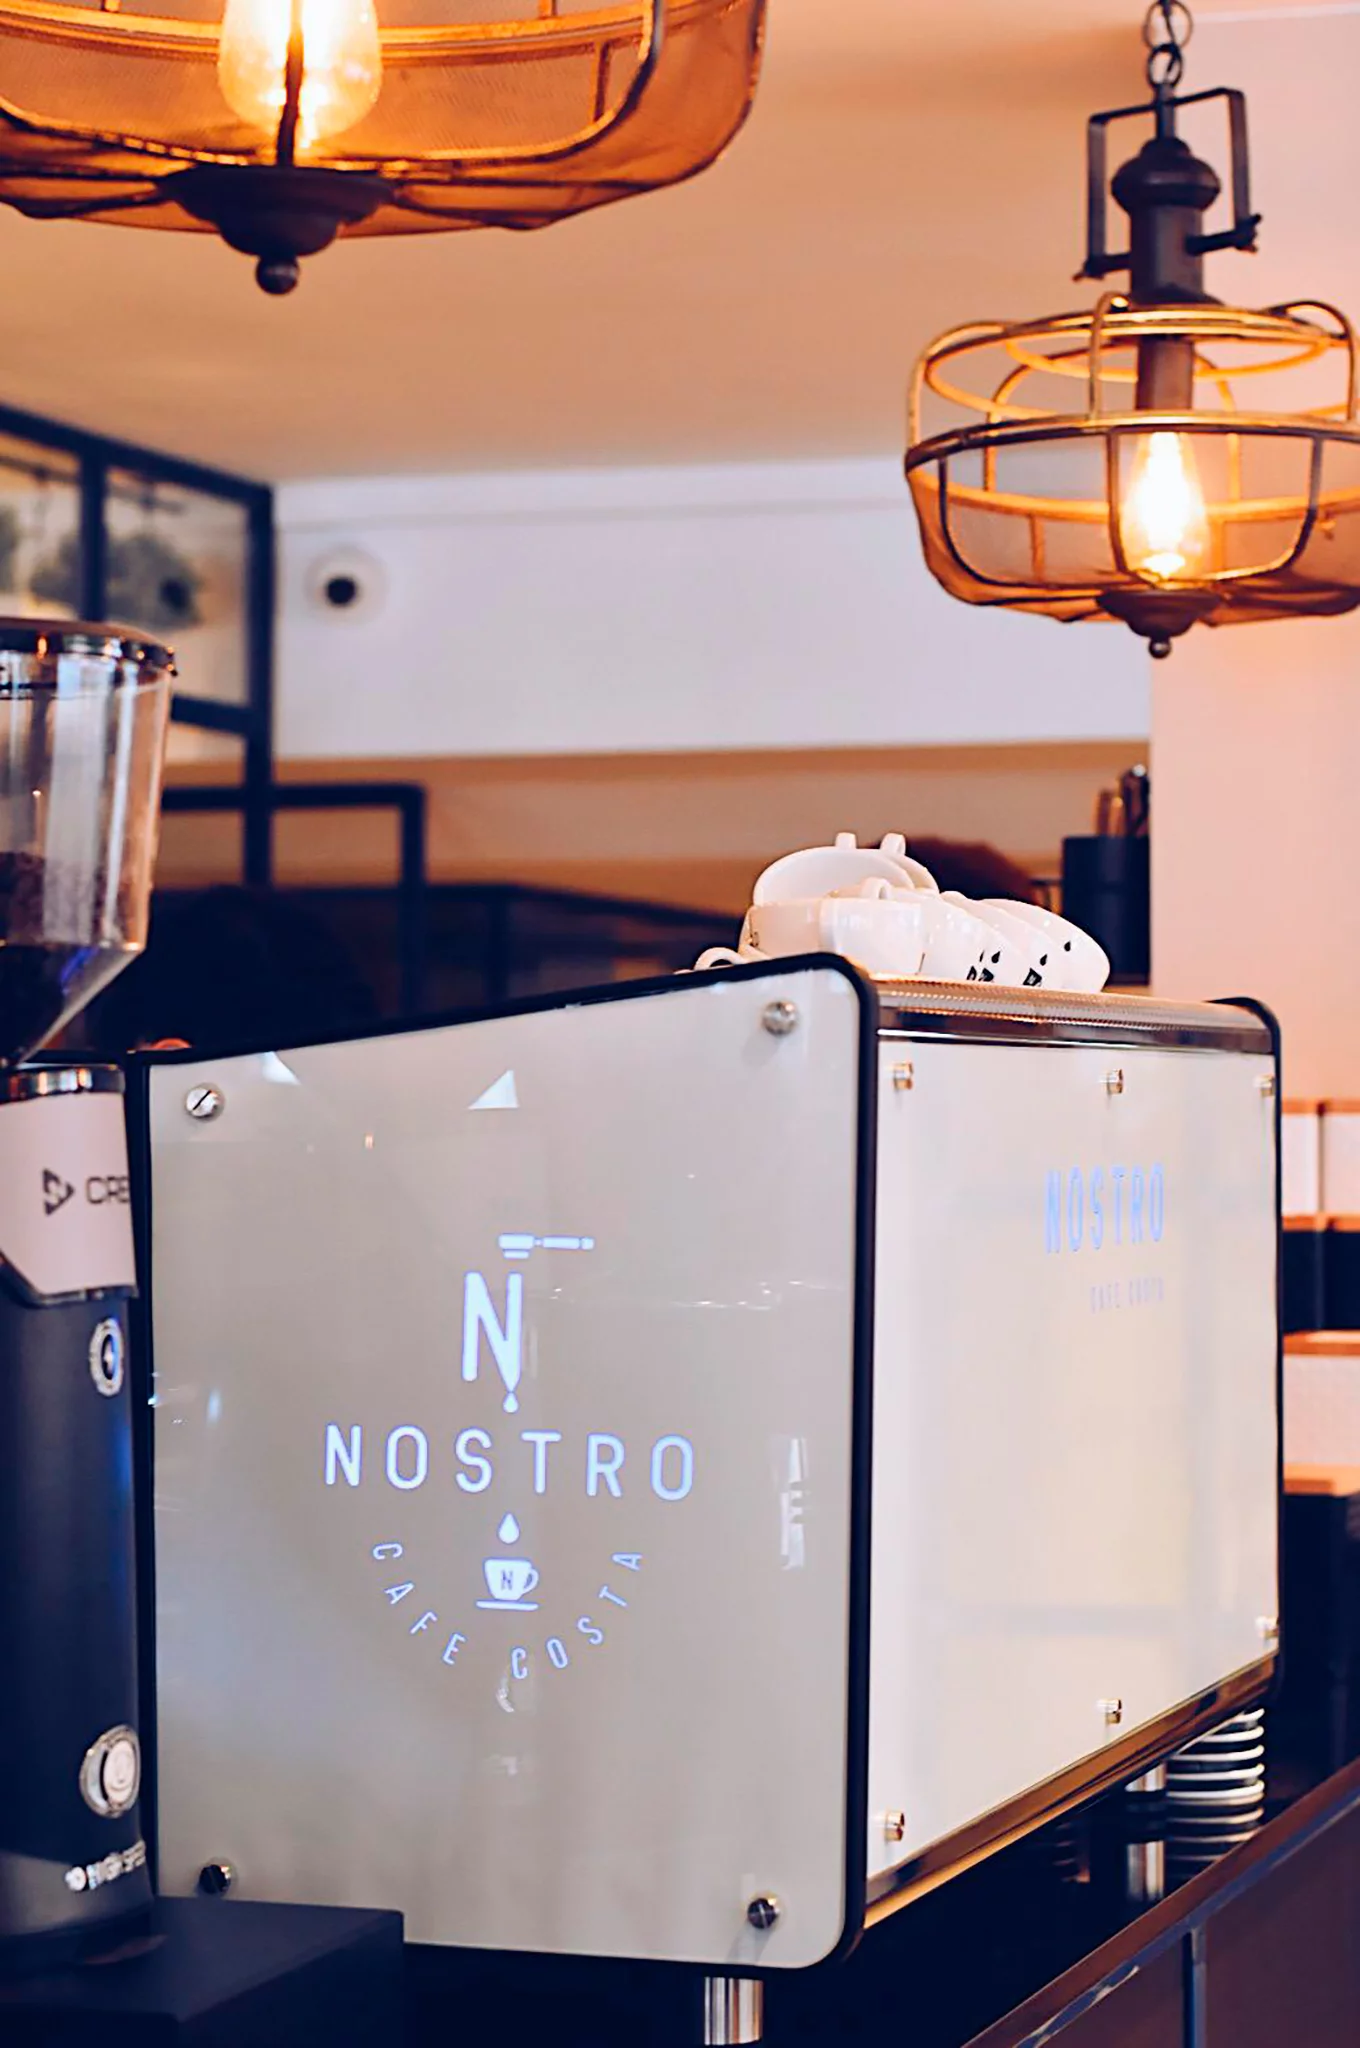 Nueva Coffee Shop – Nostro Café Costa